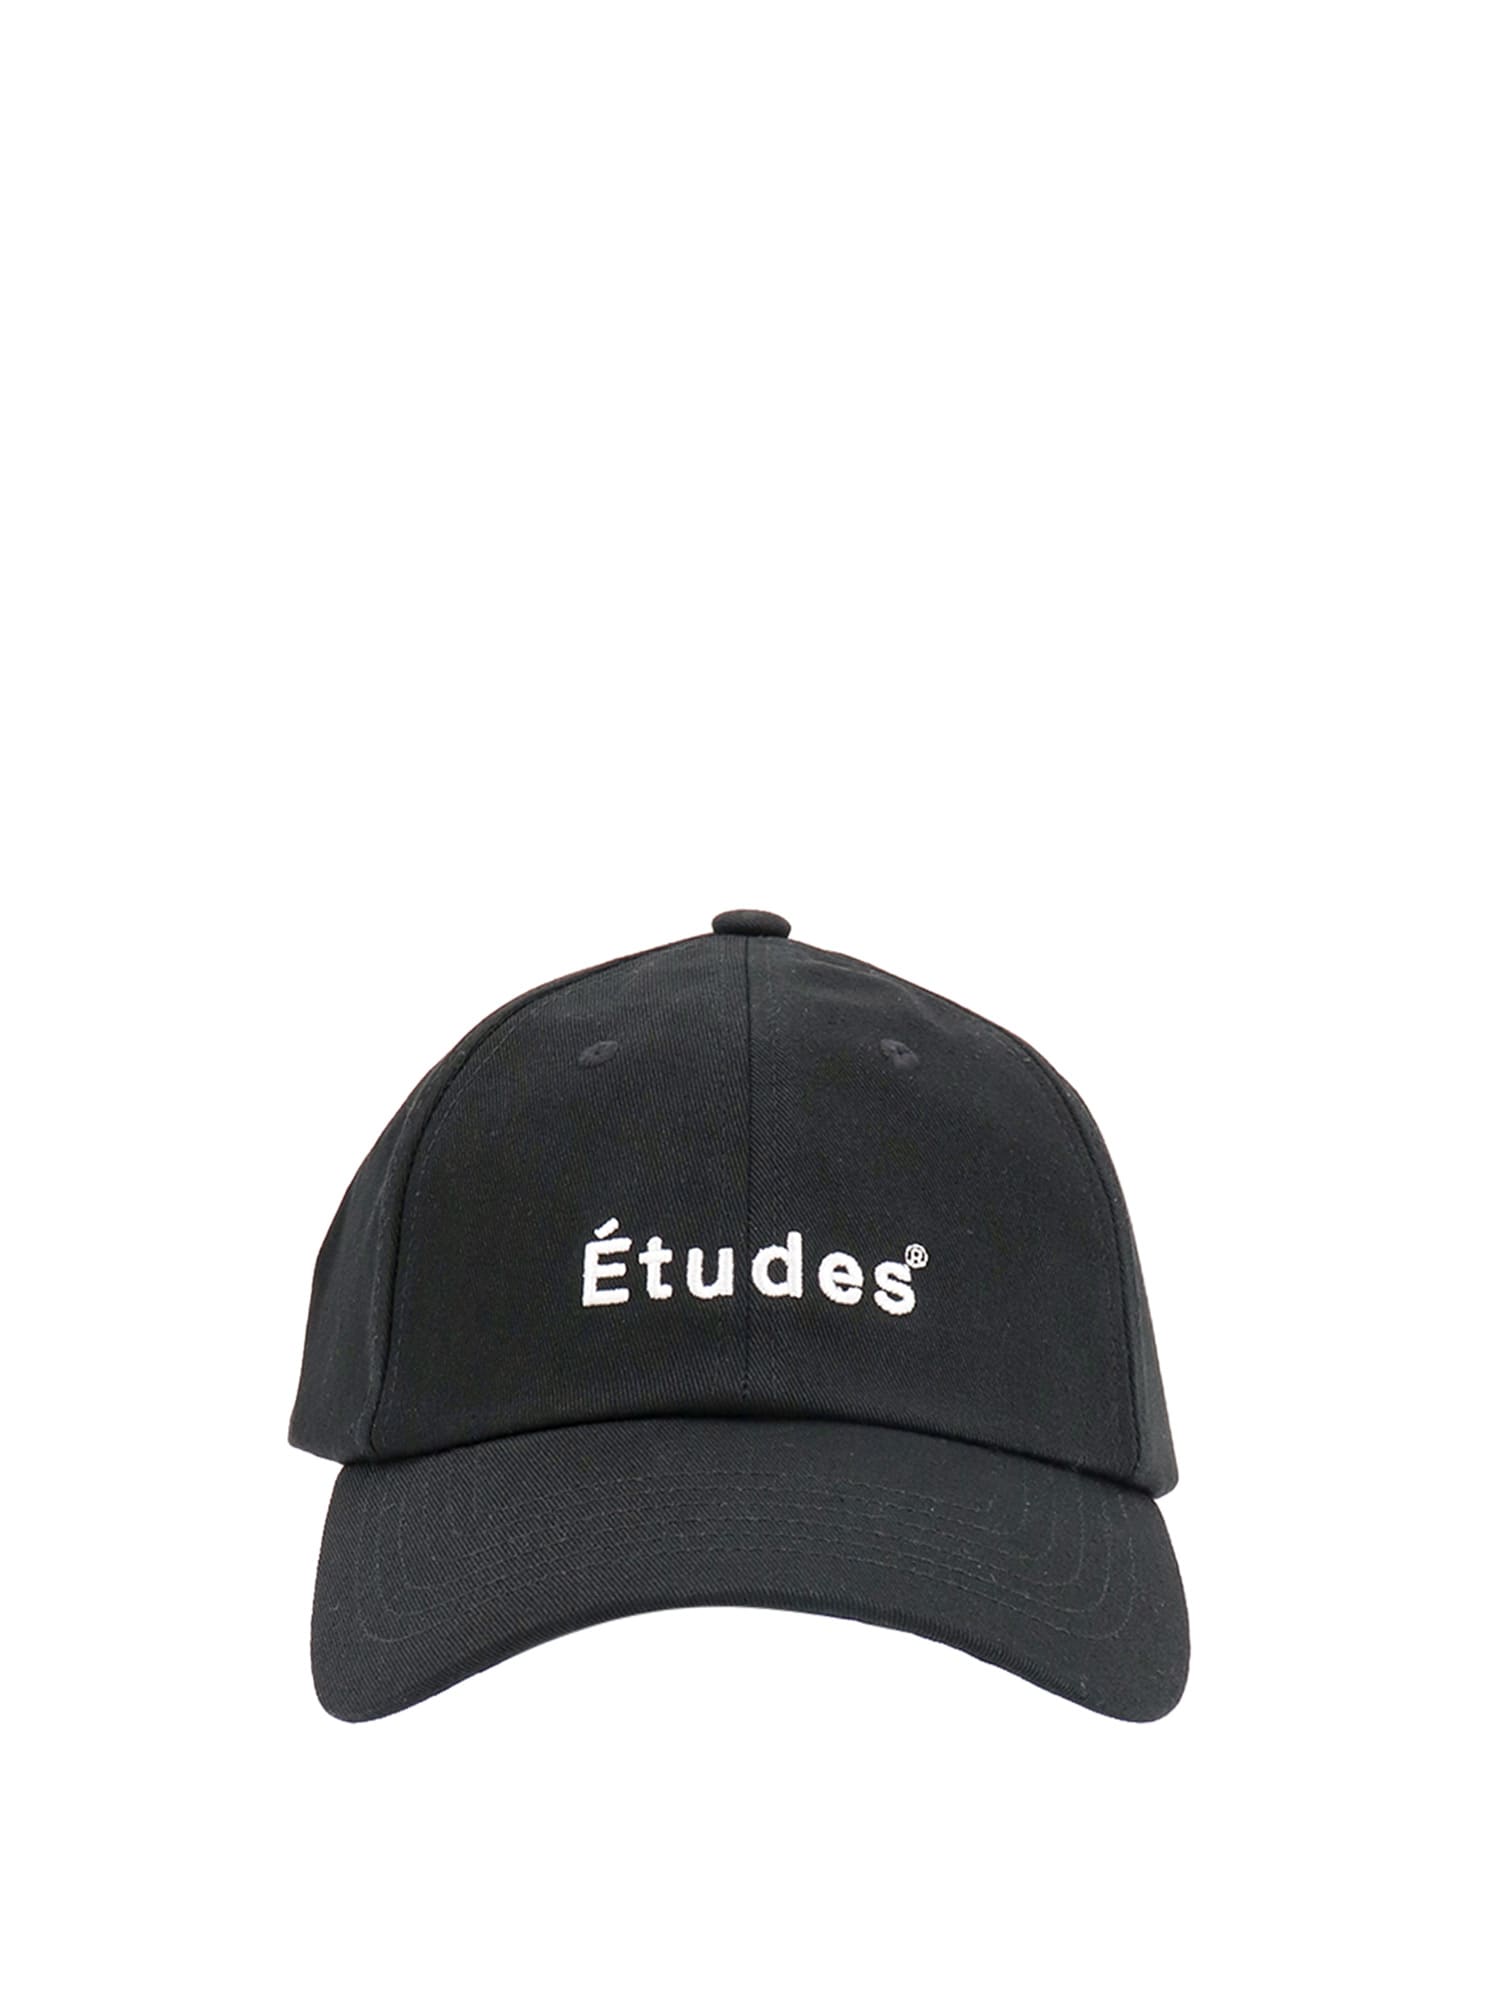 Études Hat